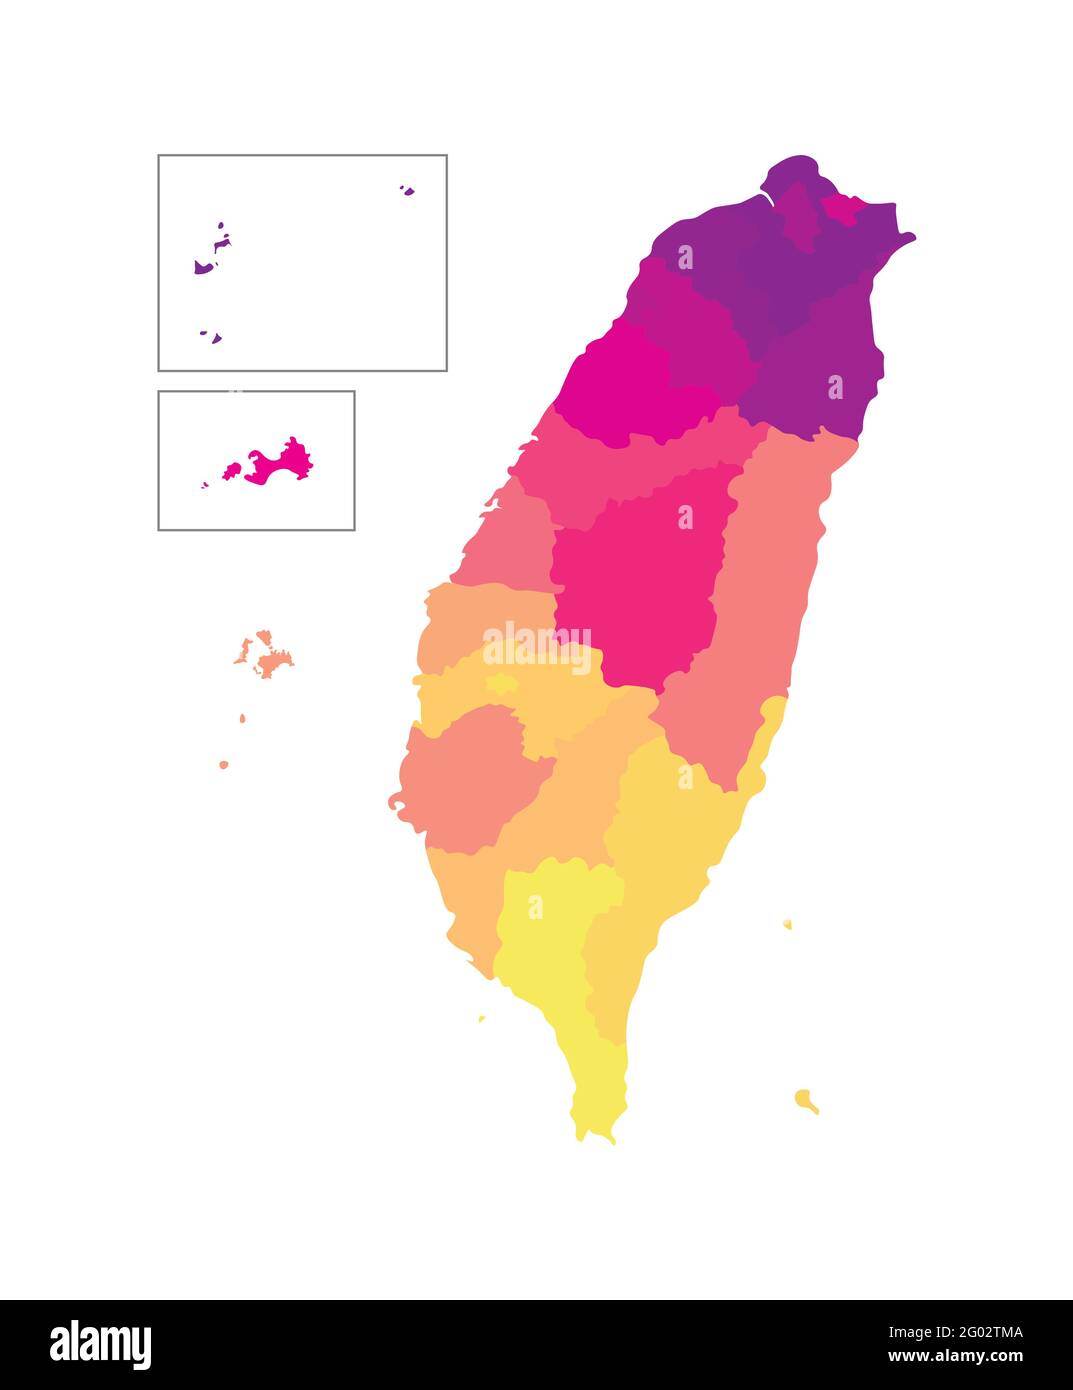 Vektor isolierte Illustration der vereinfachten Verwaltungskarte von Taiwan, Republik China (ROC). Grenzen der Regionen. Mehrfarbige Silhouetten. Stock Vektor